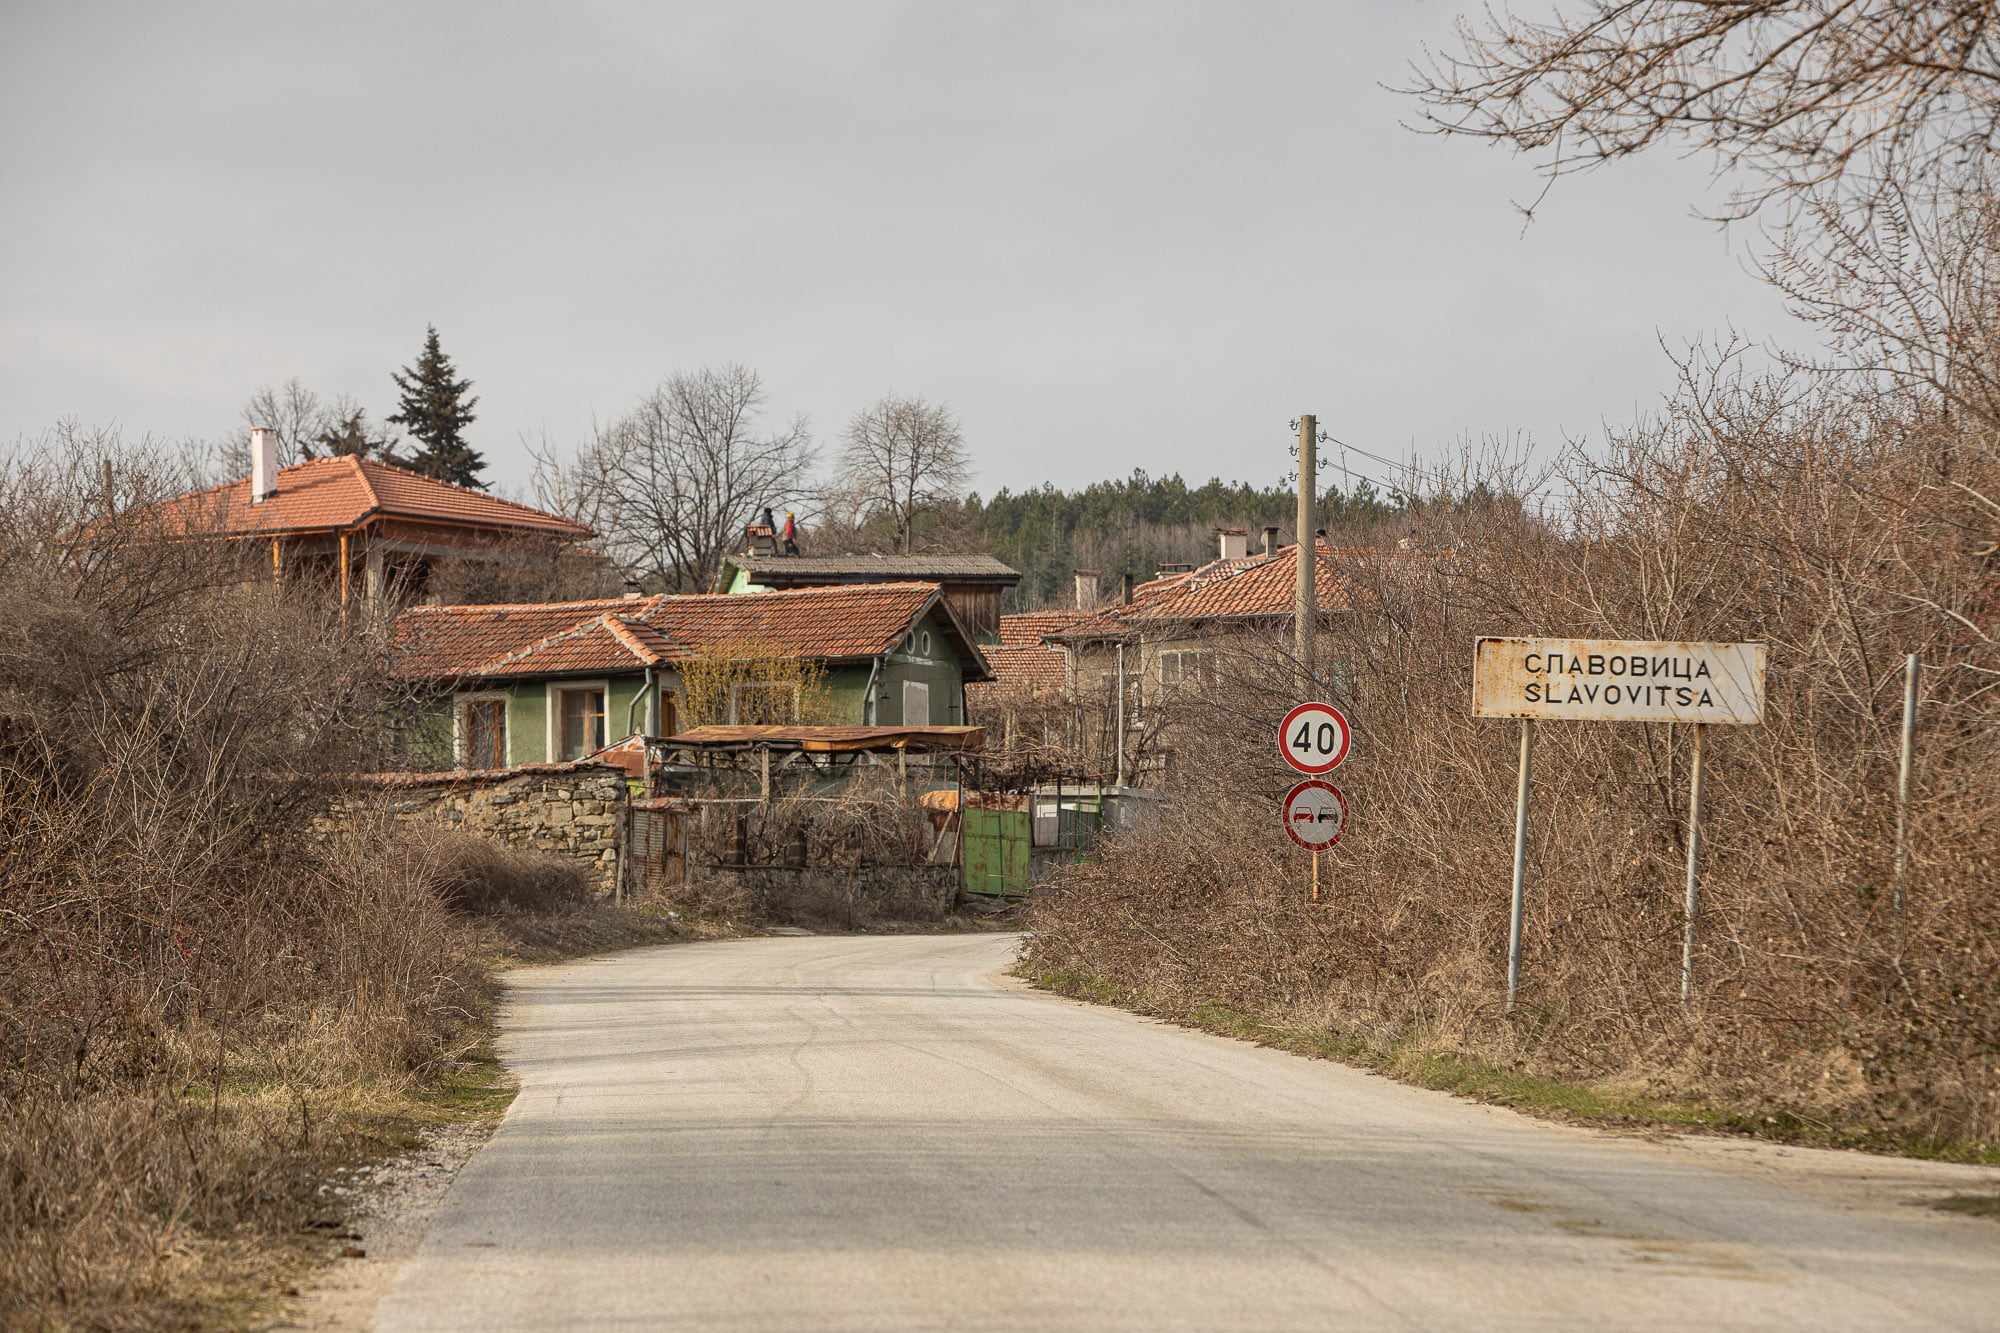 The village of Slavovitsa